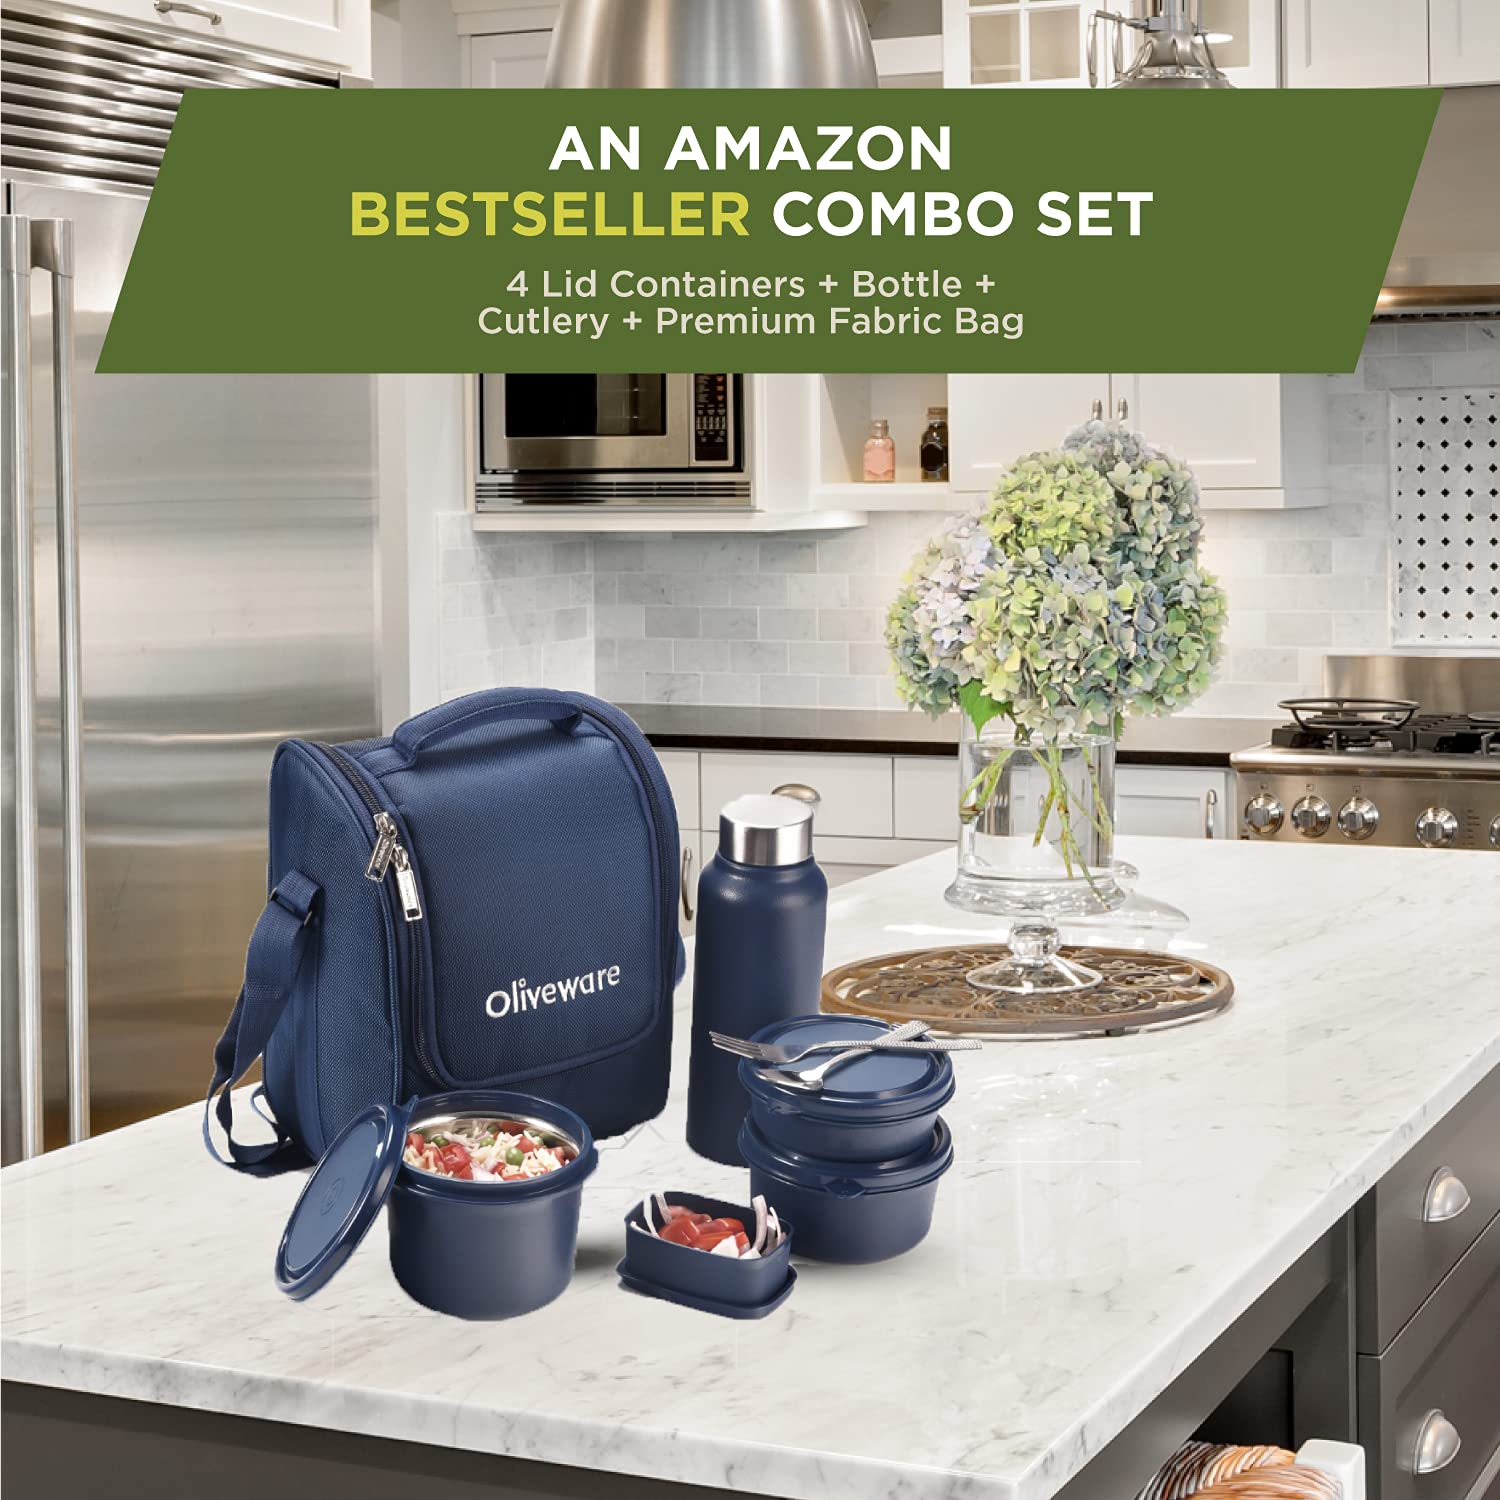 Amazon Deal: इन सामानों को अमेजन से धड़ाधड़ खरीदते हैं लोग, जानिए किचन के 10 बेस्ट सेलिंग प्रोडक्ट के बारे